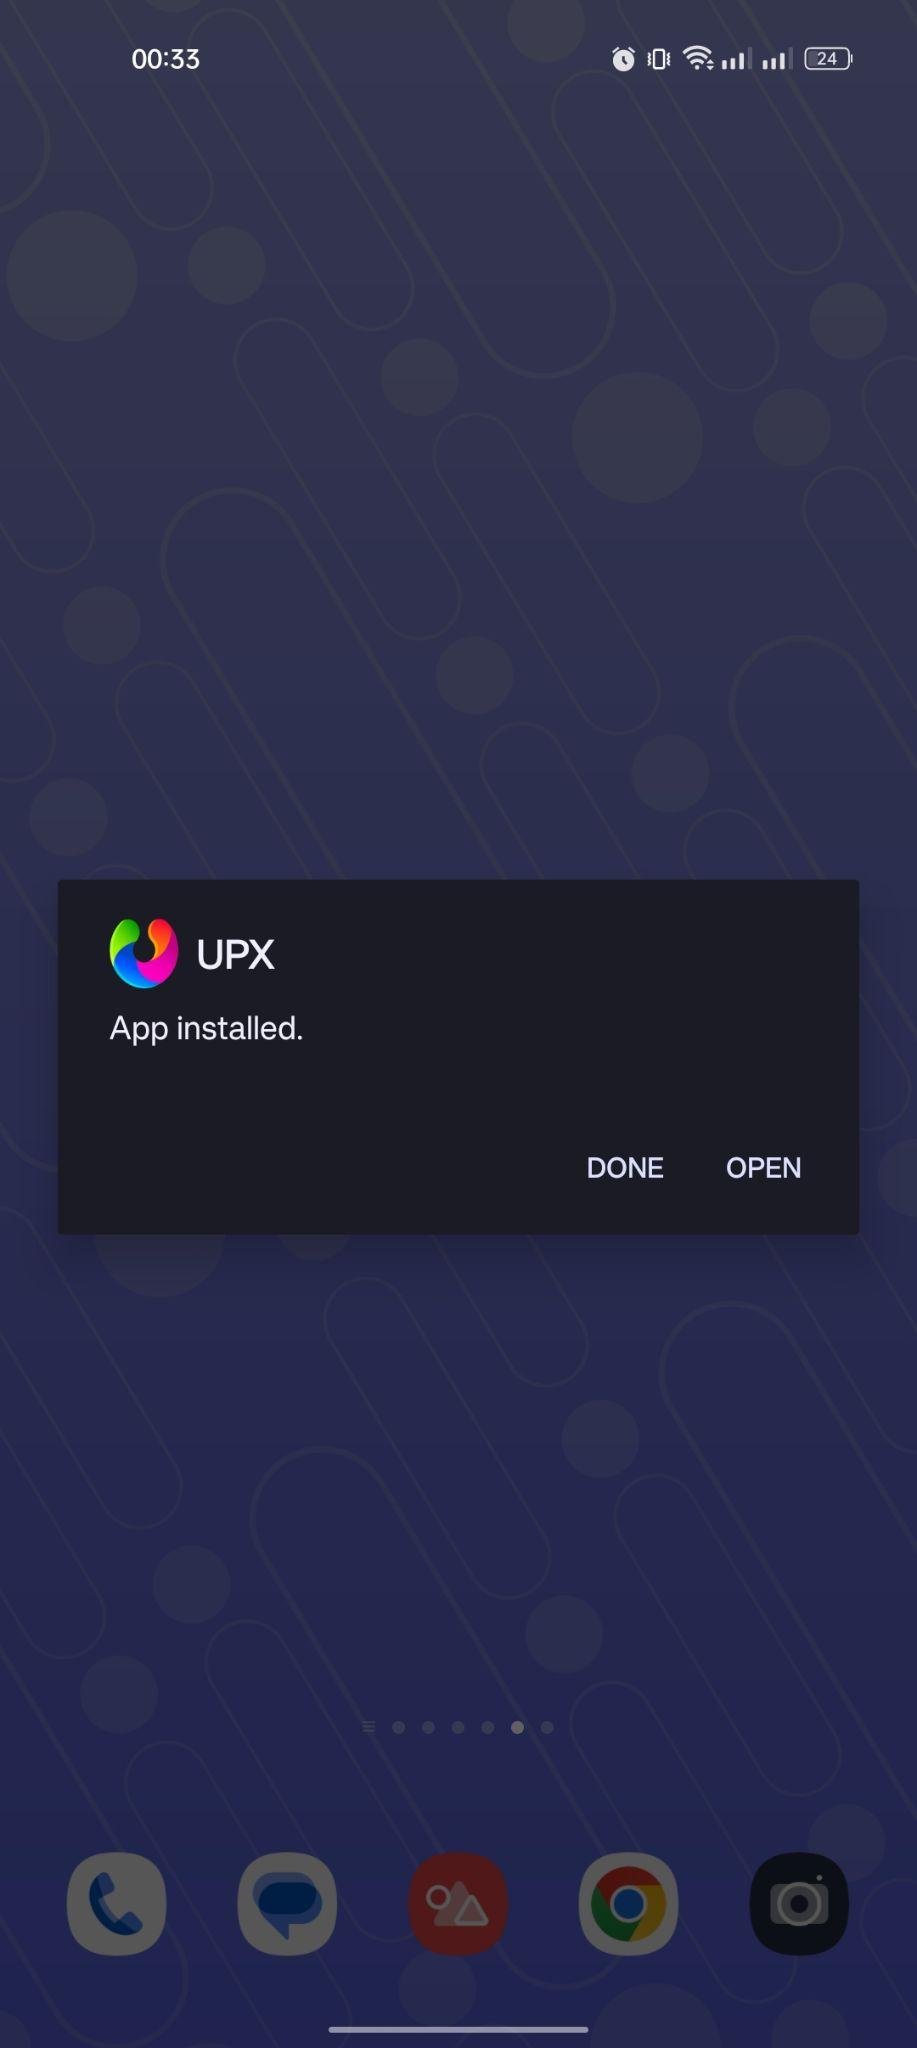 UPX apk installed